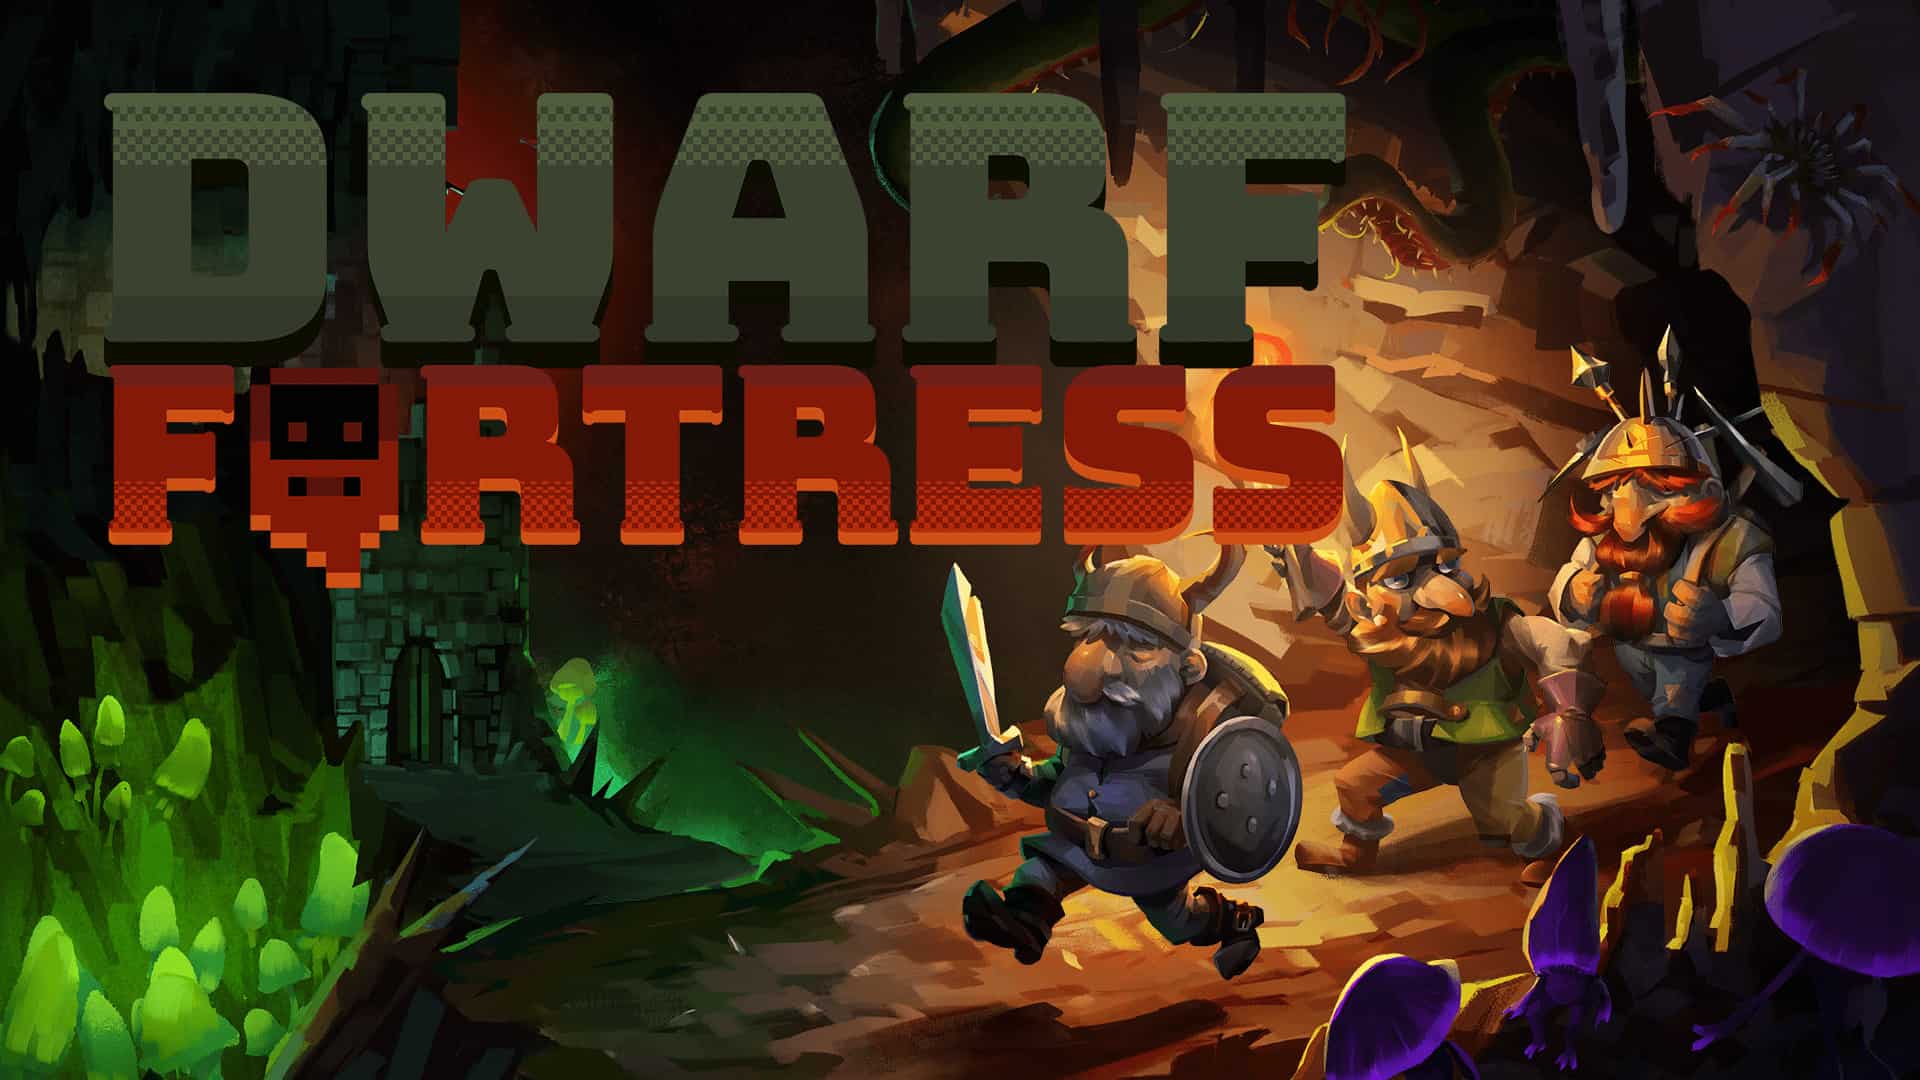 42 games like dwarf fortress